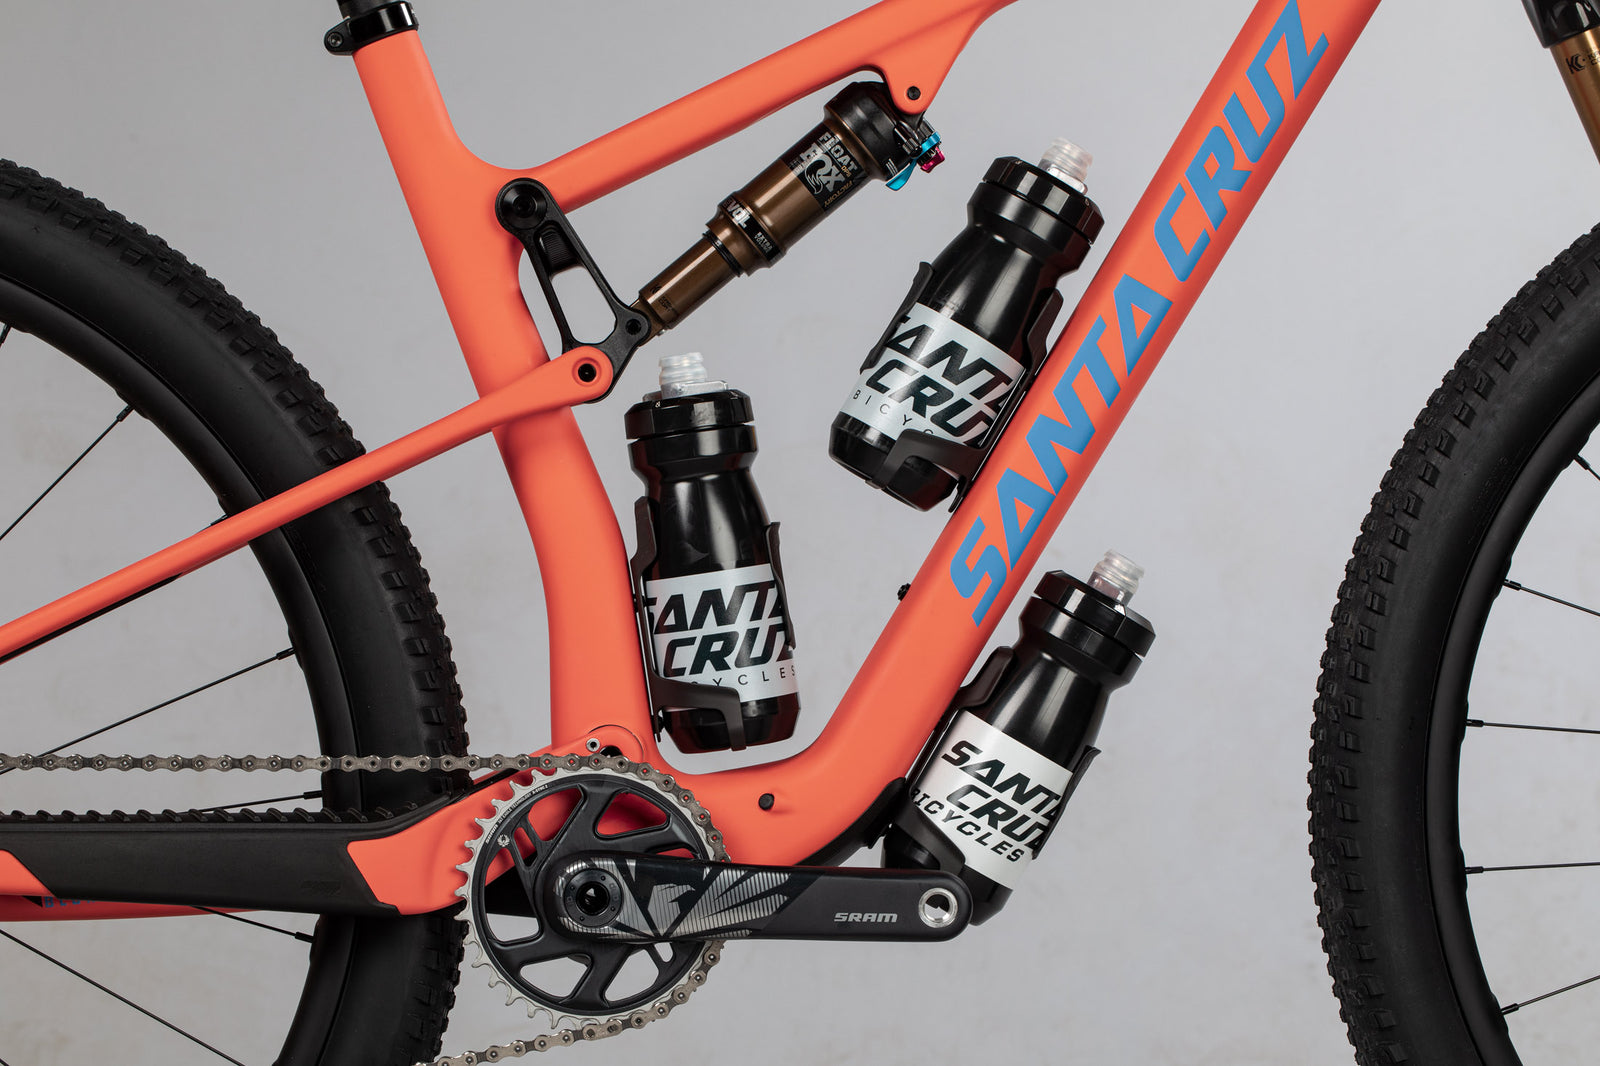 2022 Santa Cruz Blur XC full suspension mountain bike 2 to 3 water bottle mounts